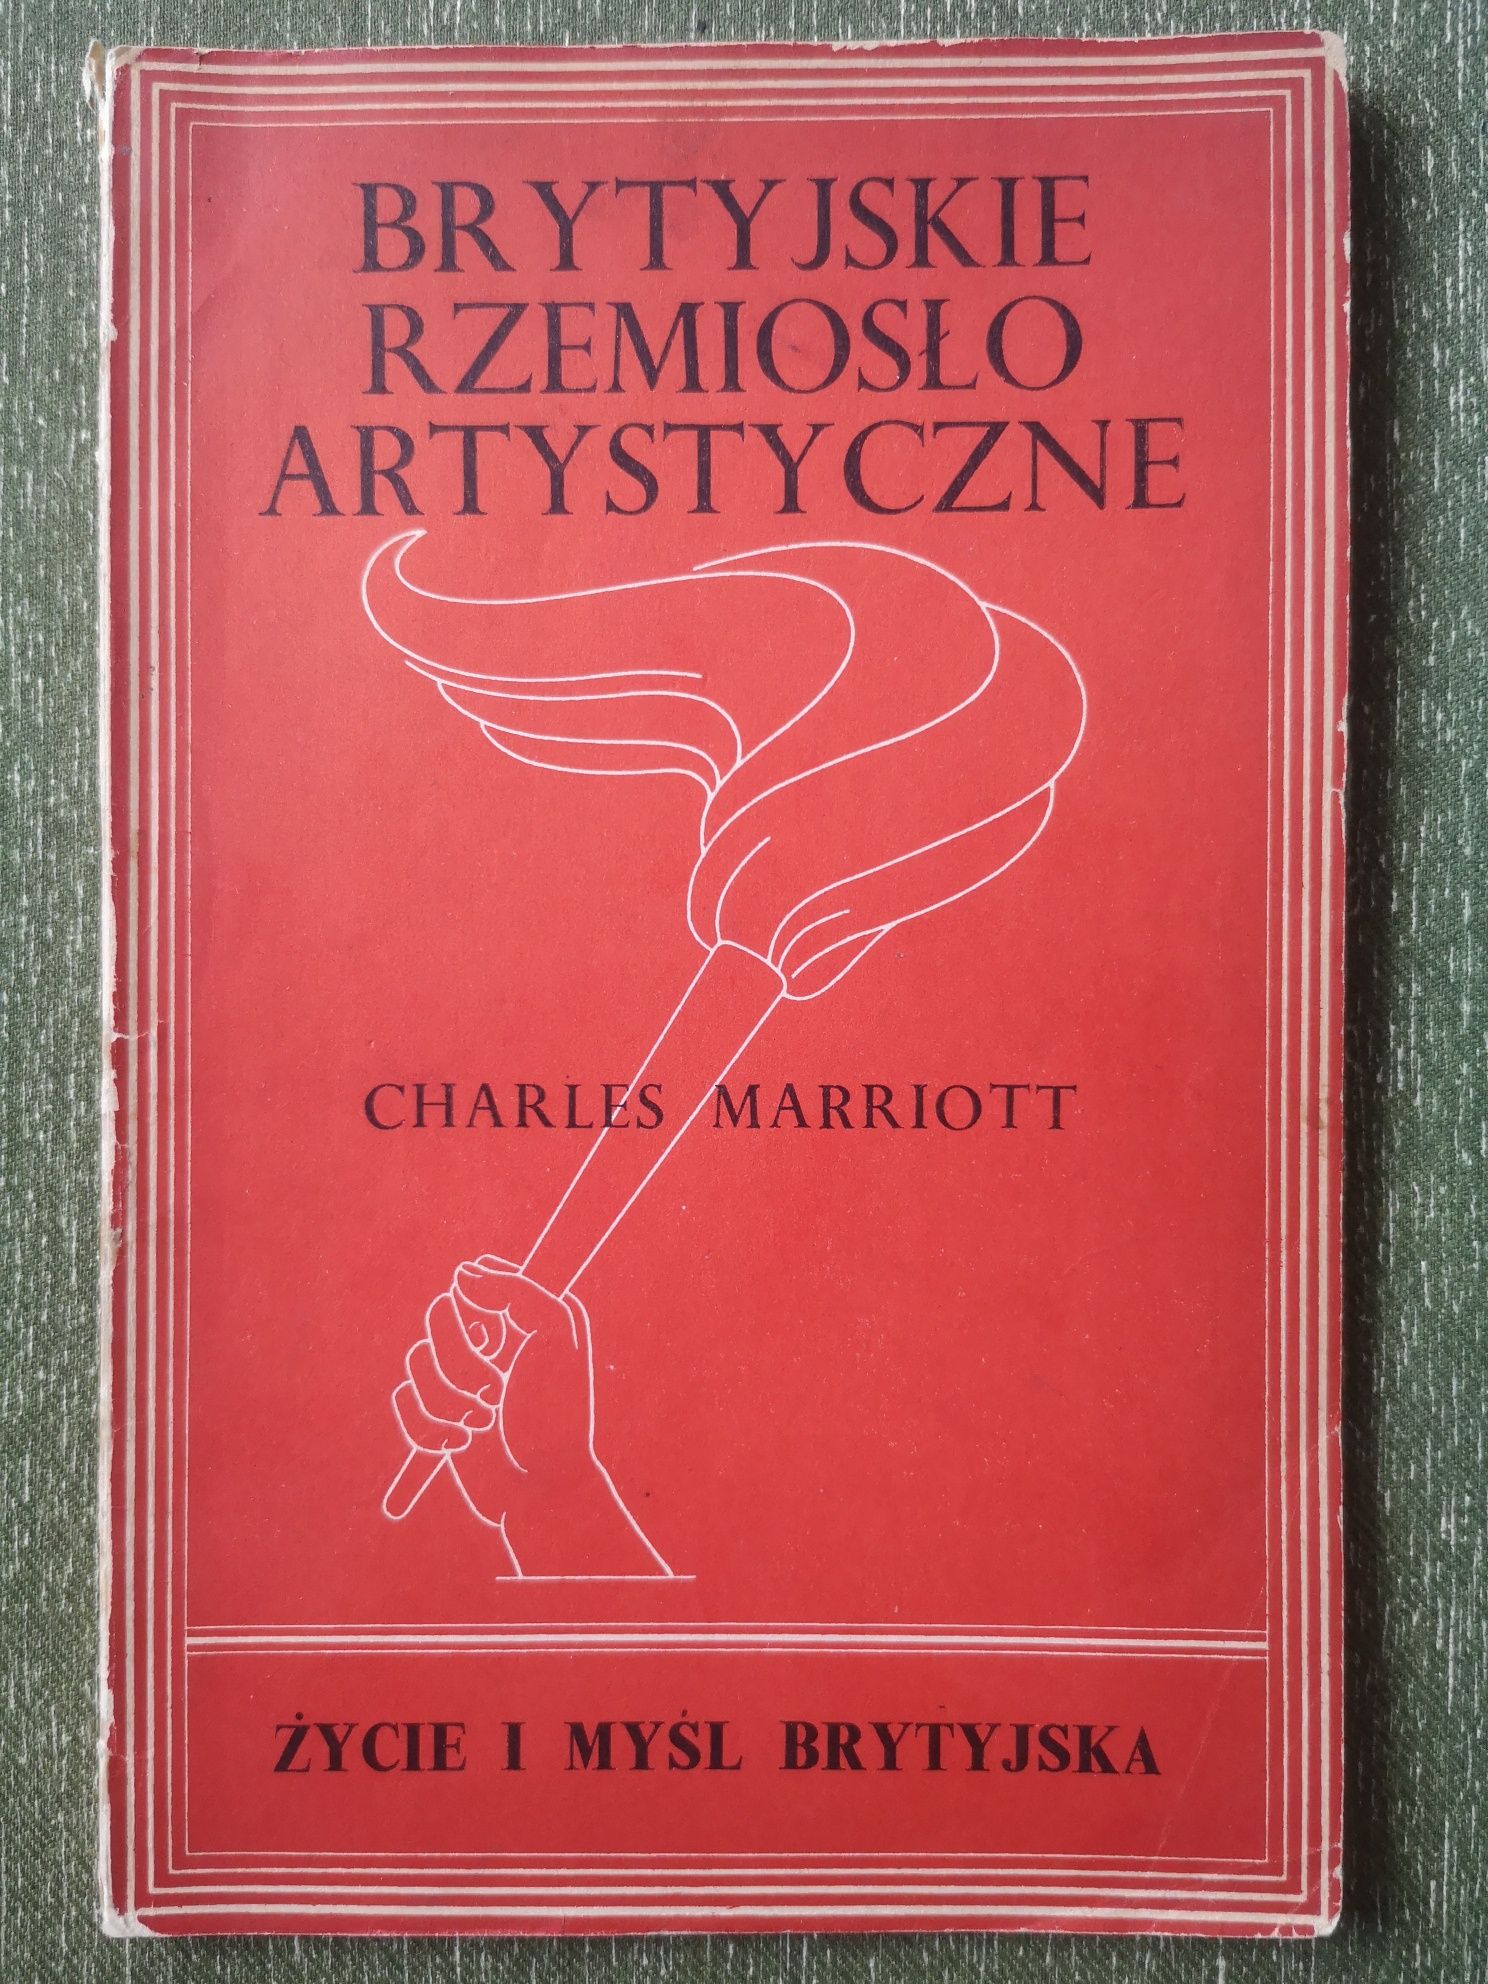 Charles Marriott - Brytyjskie Rzemiosło Artystyczne 1945r